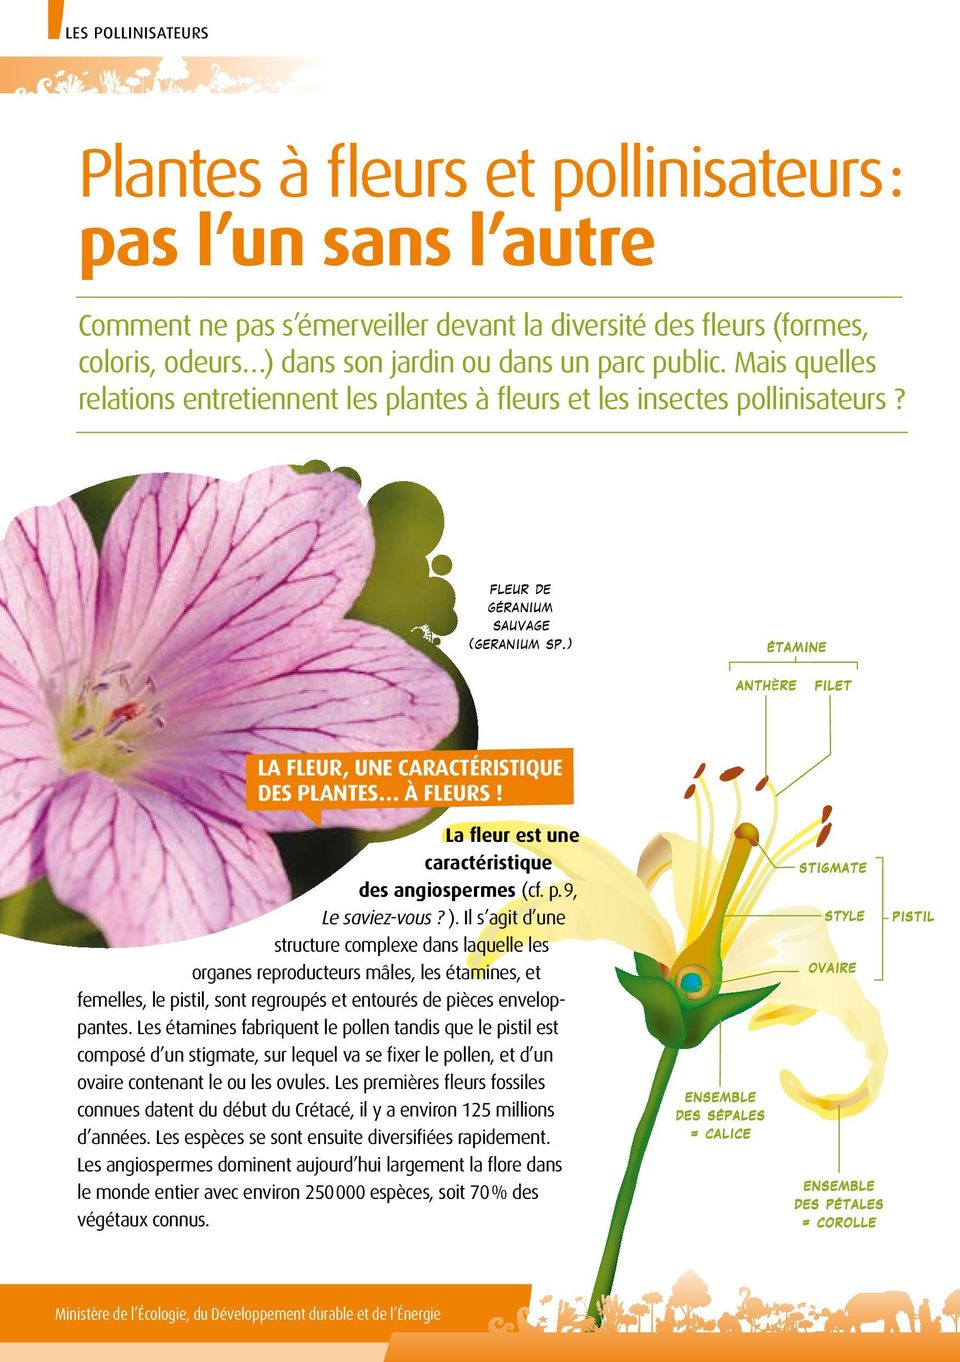 ) étamine anth re filet La fleur, une caractéristique des plantes à fleurs! La fleur est une caractéristique des angiospermes (cf. p. 9, Le saviez-vous? ).